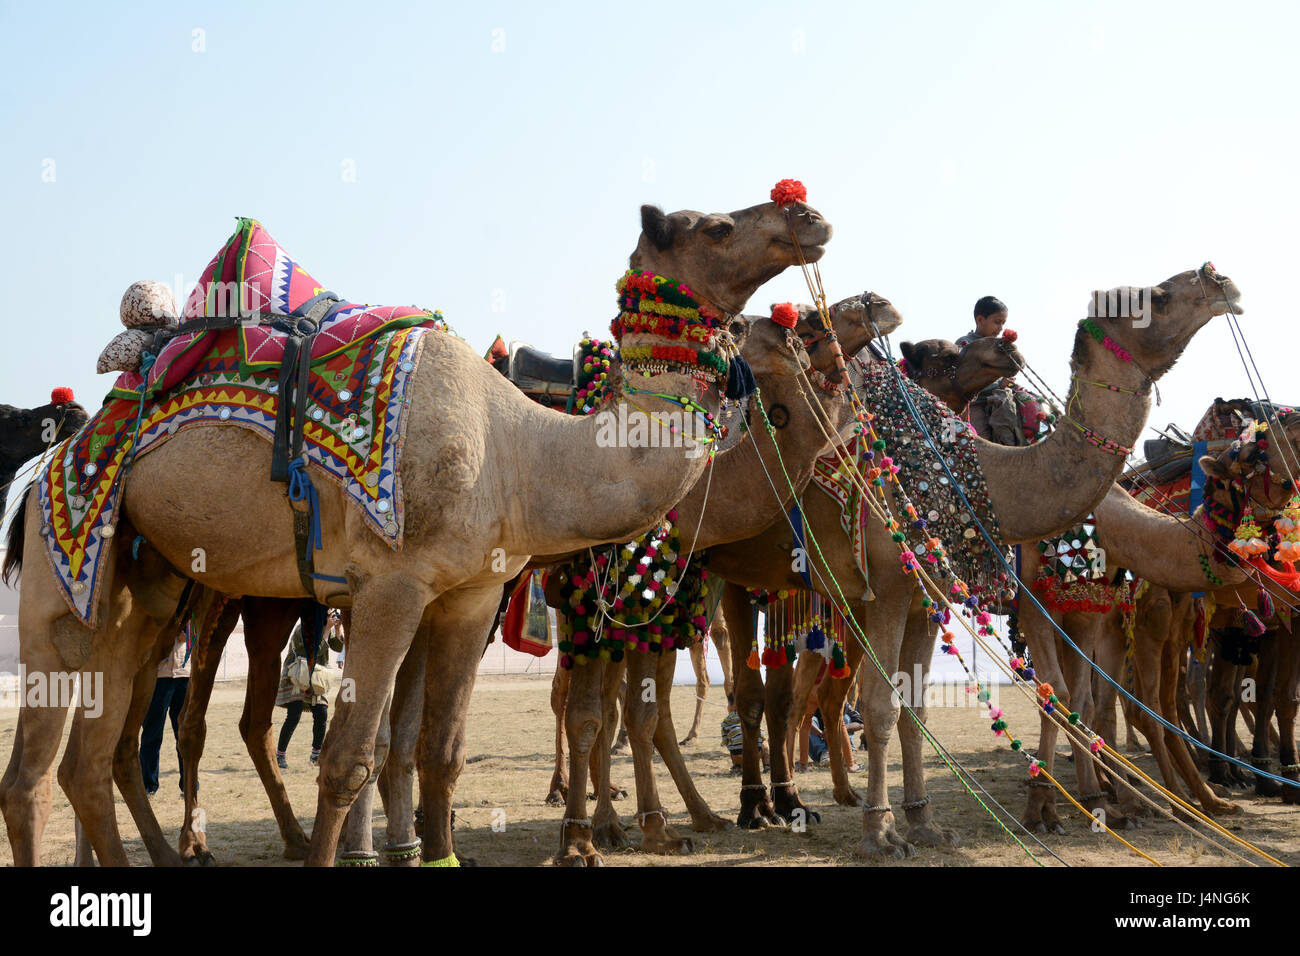 Camel festival in Bikaner. Stock Photo